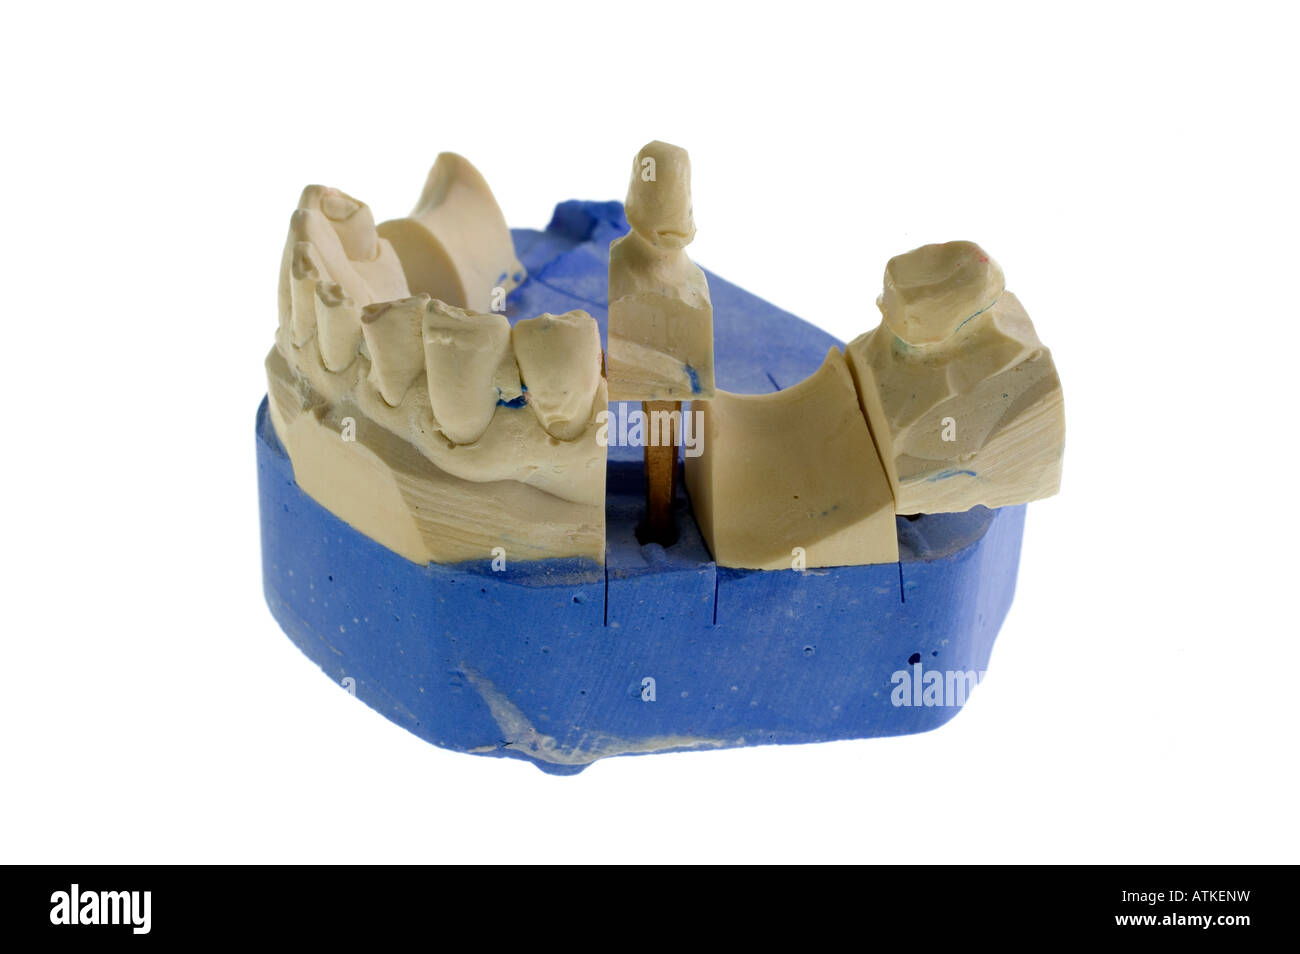 Modell für Zahnersatz, dental prostheses Stock Photo